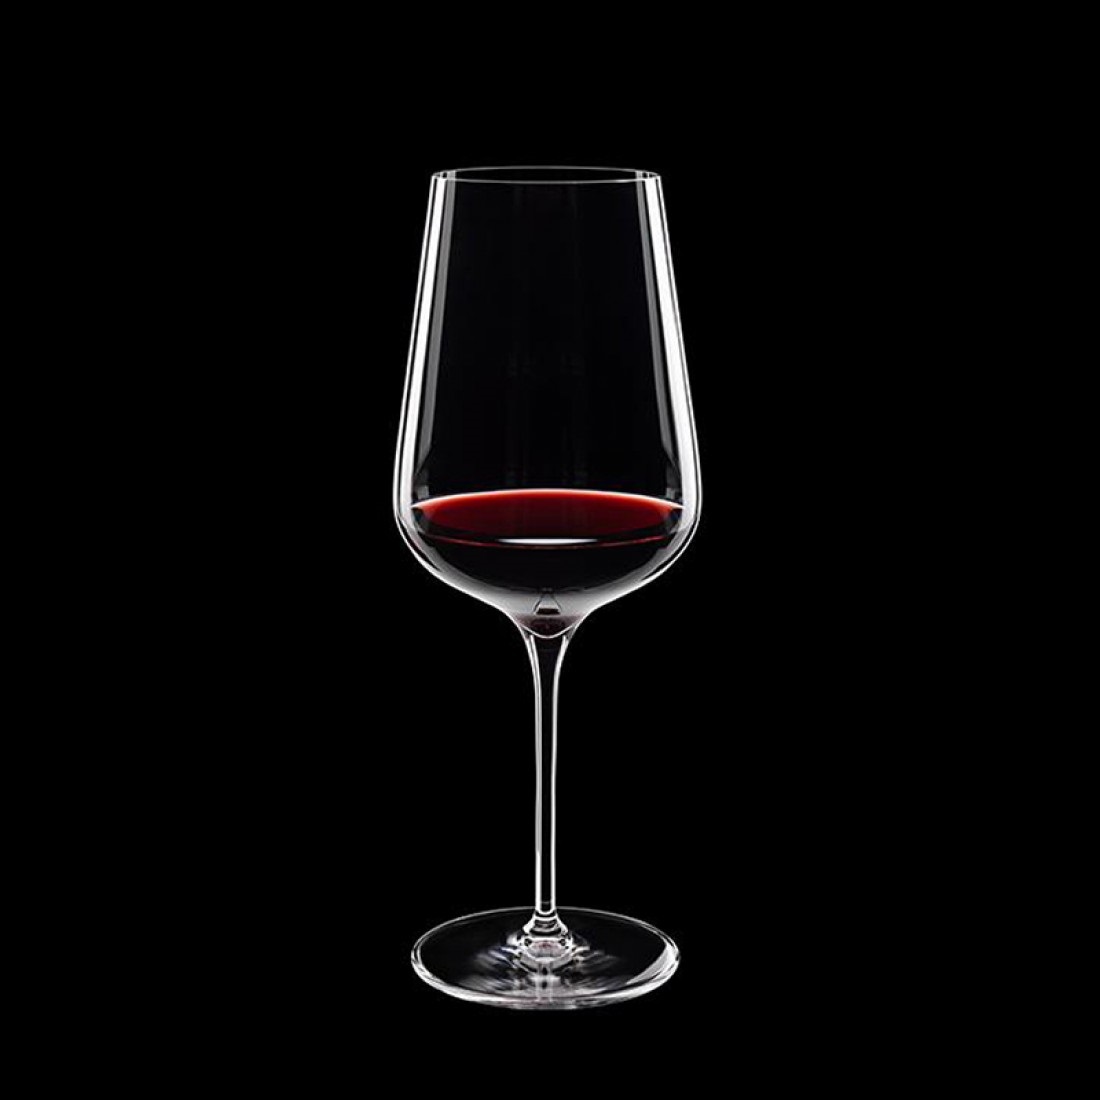 Rotweinglas Intenso, 550 ml, mit Rotwein gefüllt, schwarzer HIntergrund